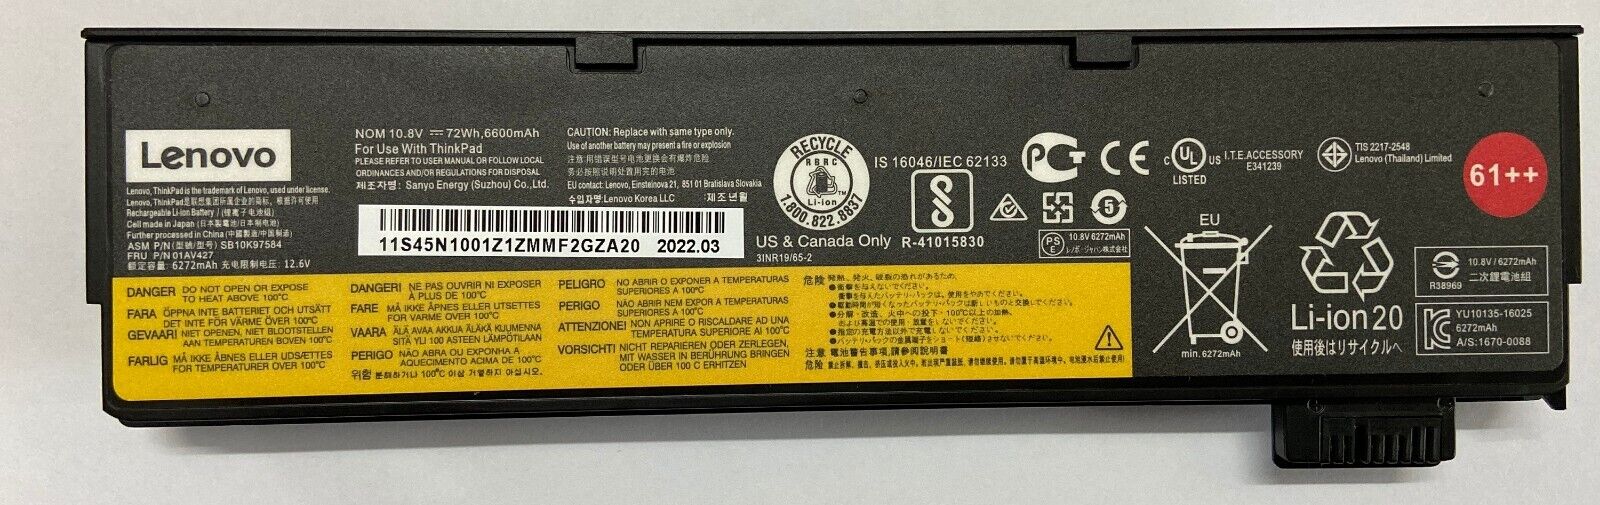 Batería OEM 61+ para Lenovo Thinkpad T470 T480 T570 01AV425 01AV424 48Wh